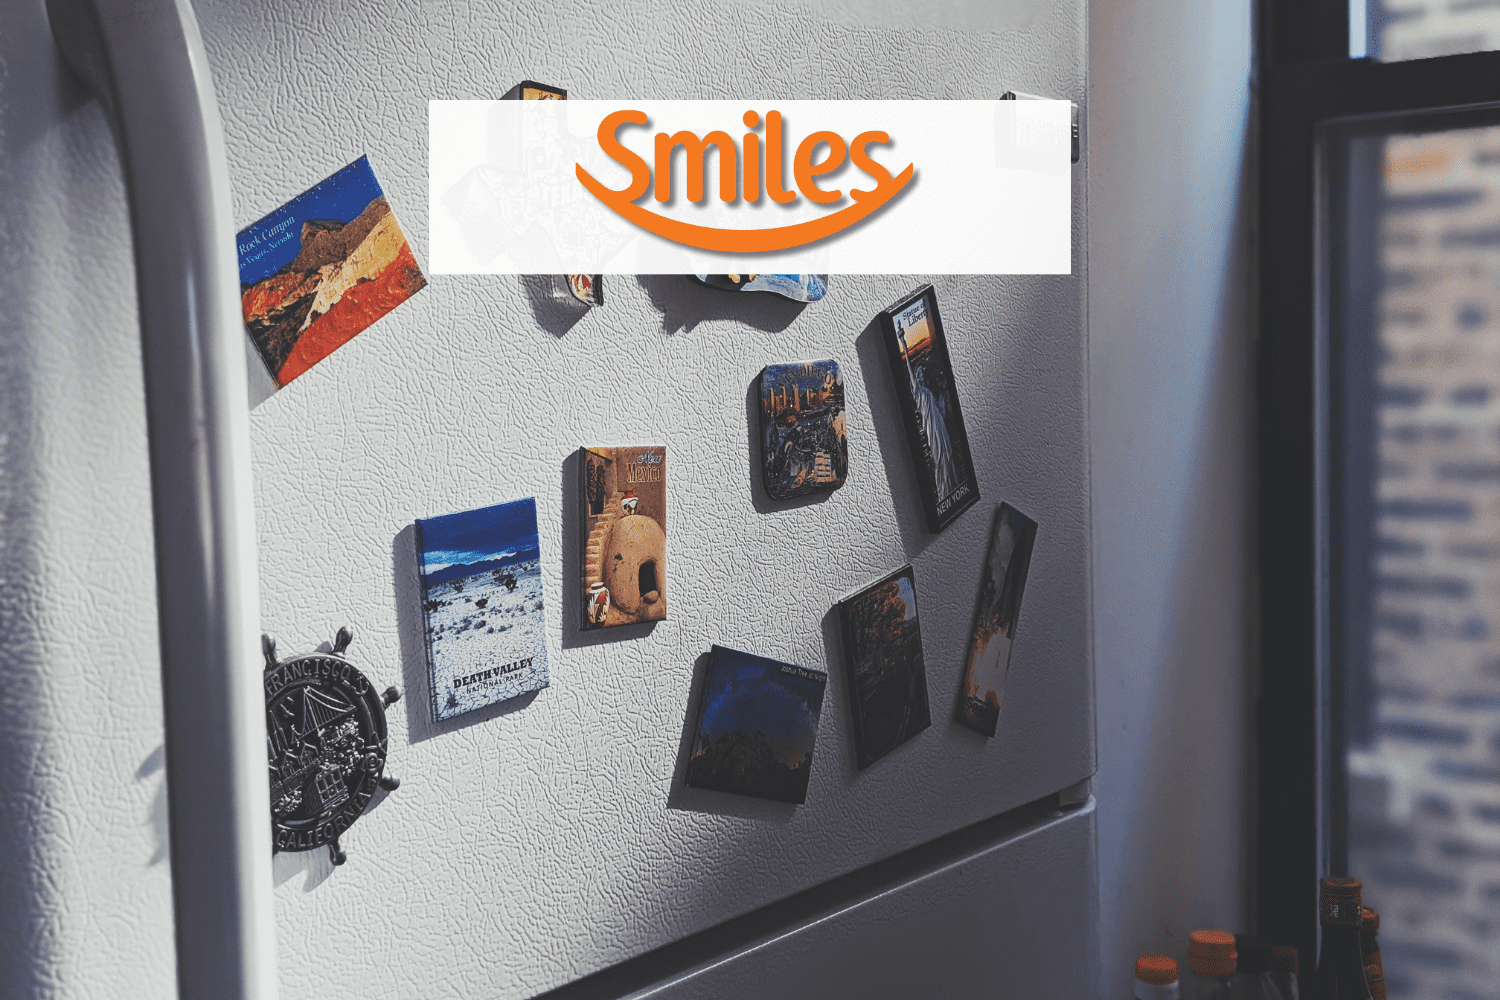 geladeira com logo pontos Smiles